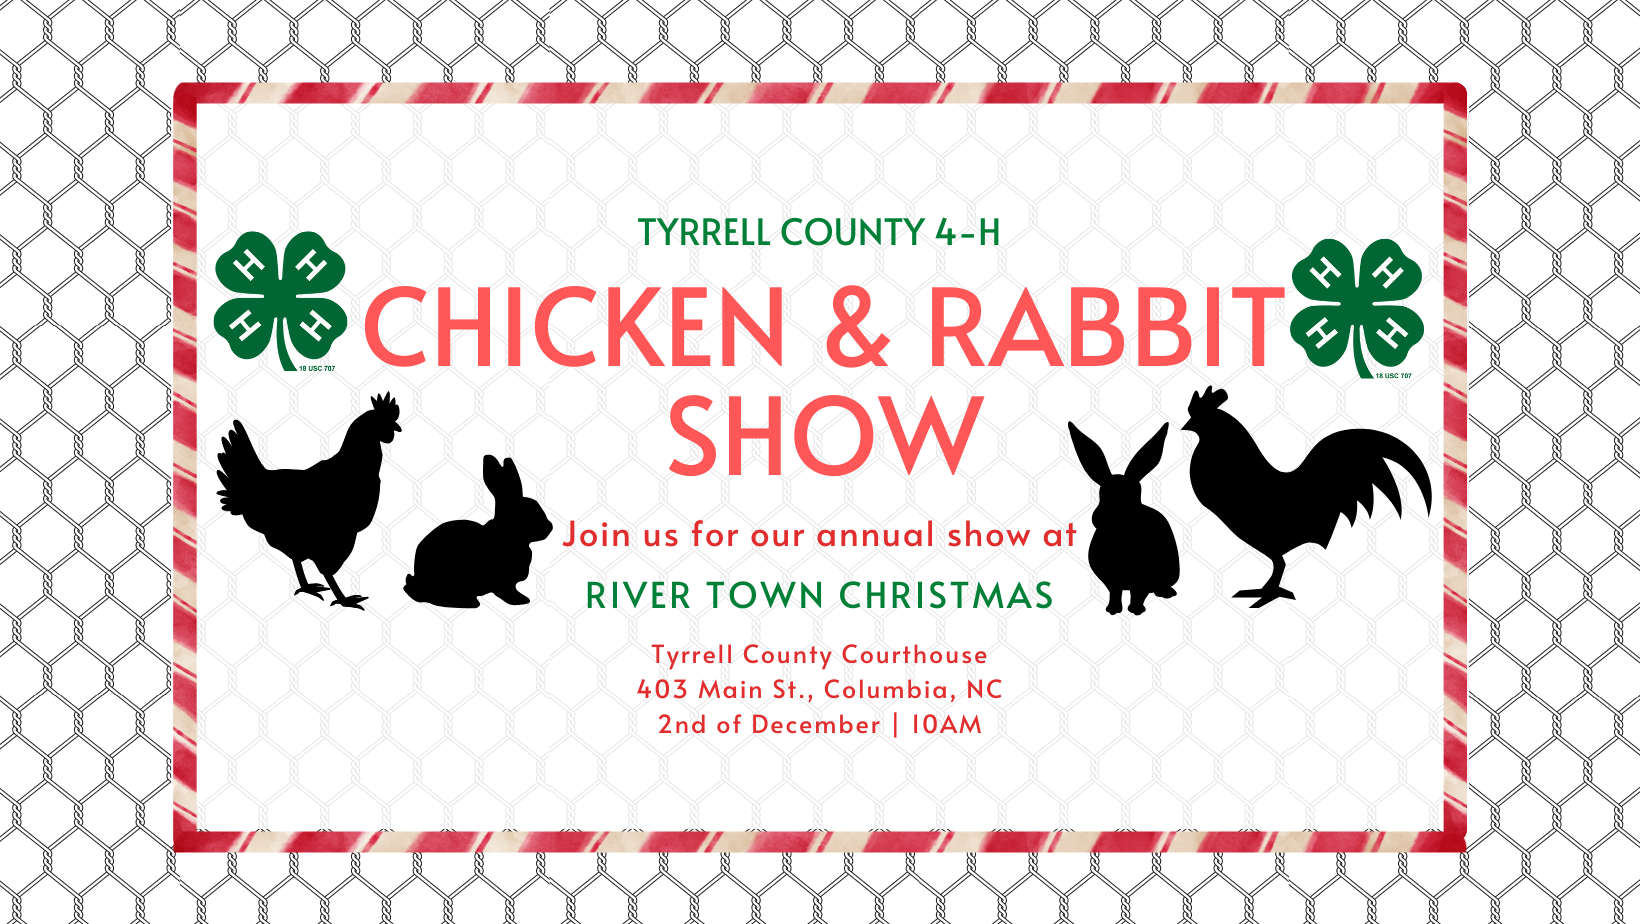 Tyrrell County 4-H Chicken & Rabbit Show banner